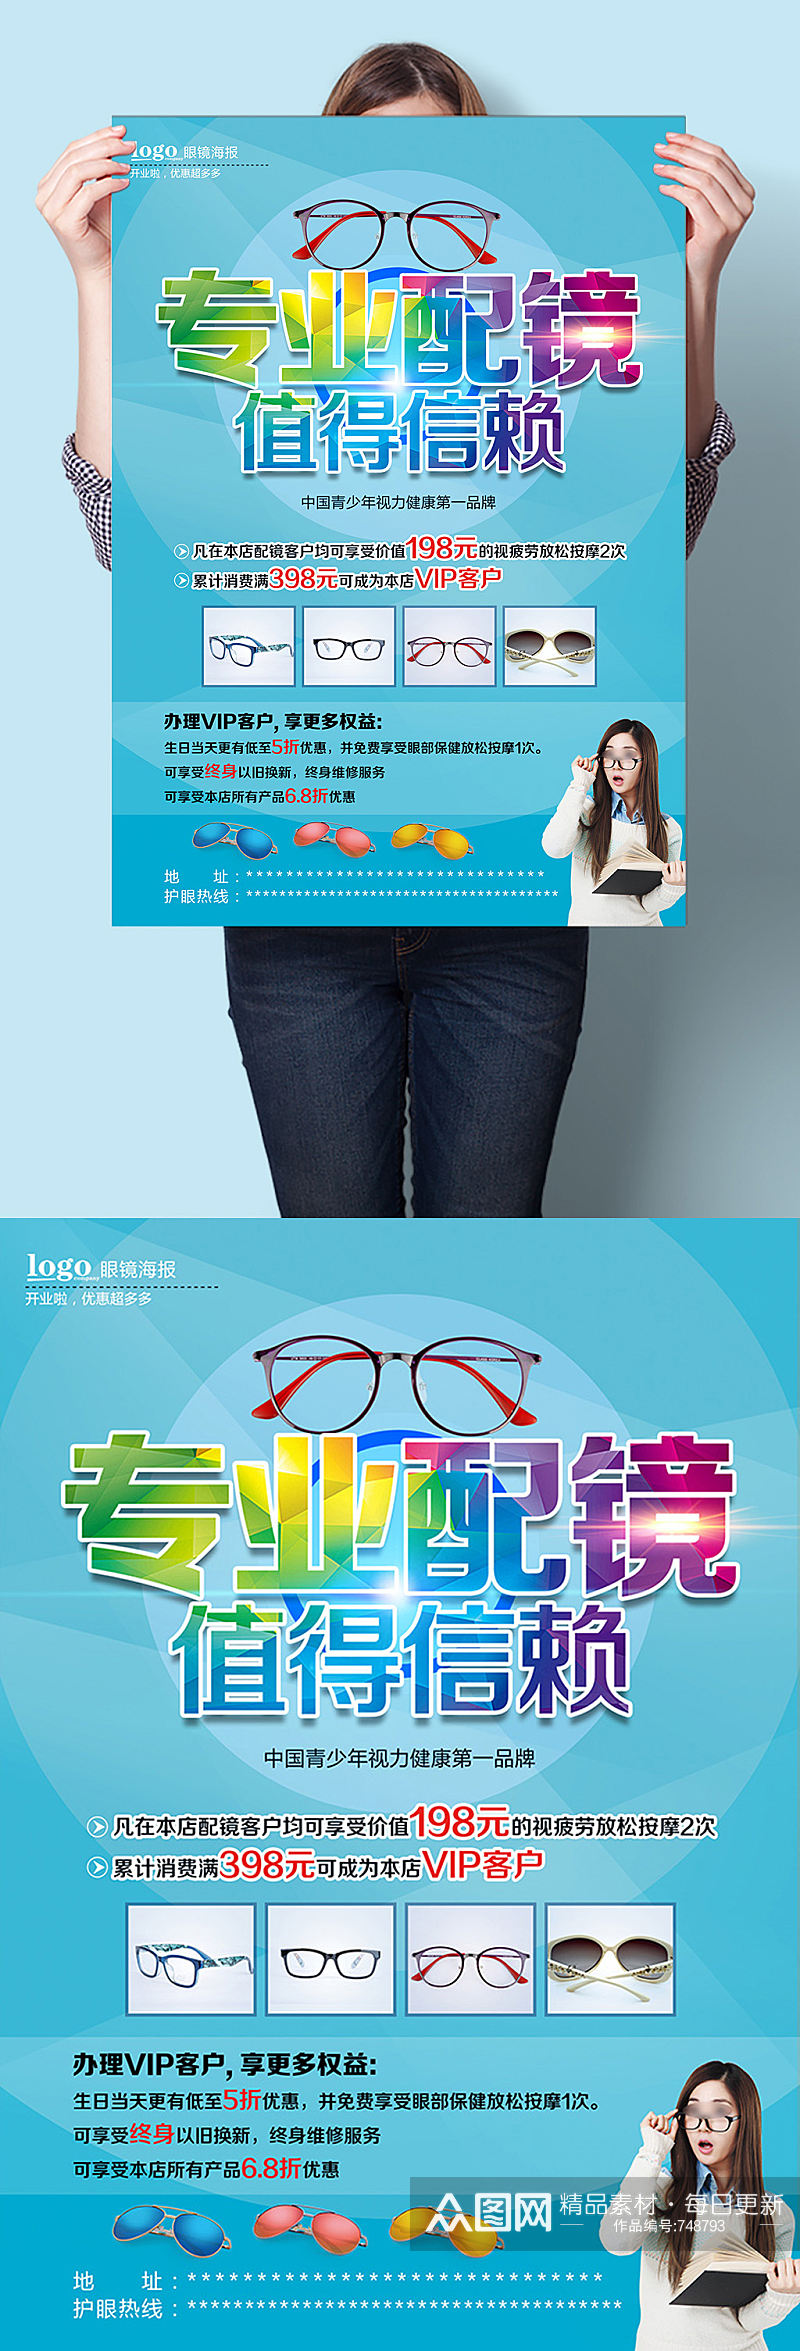 专业配镜值得信赖眼镜店活动宣传海报素材